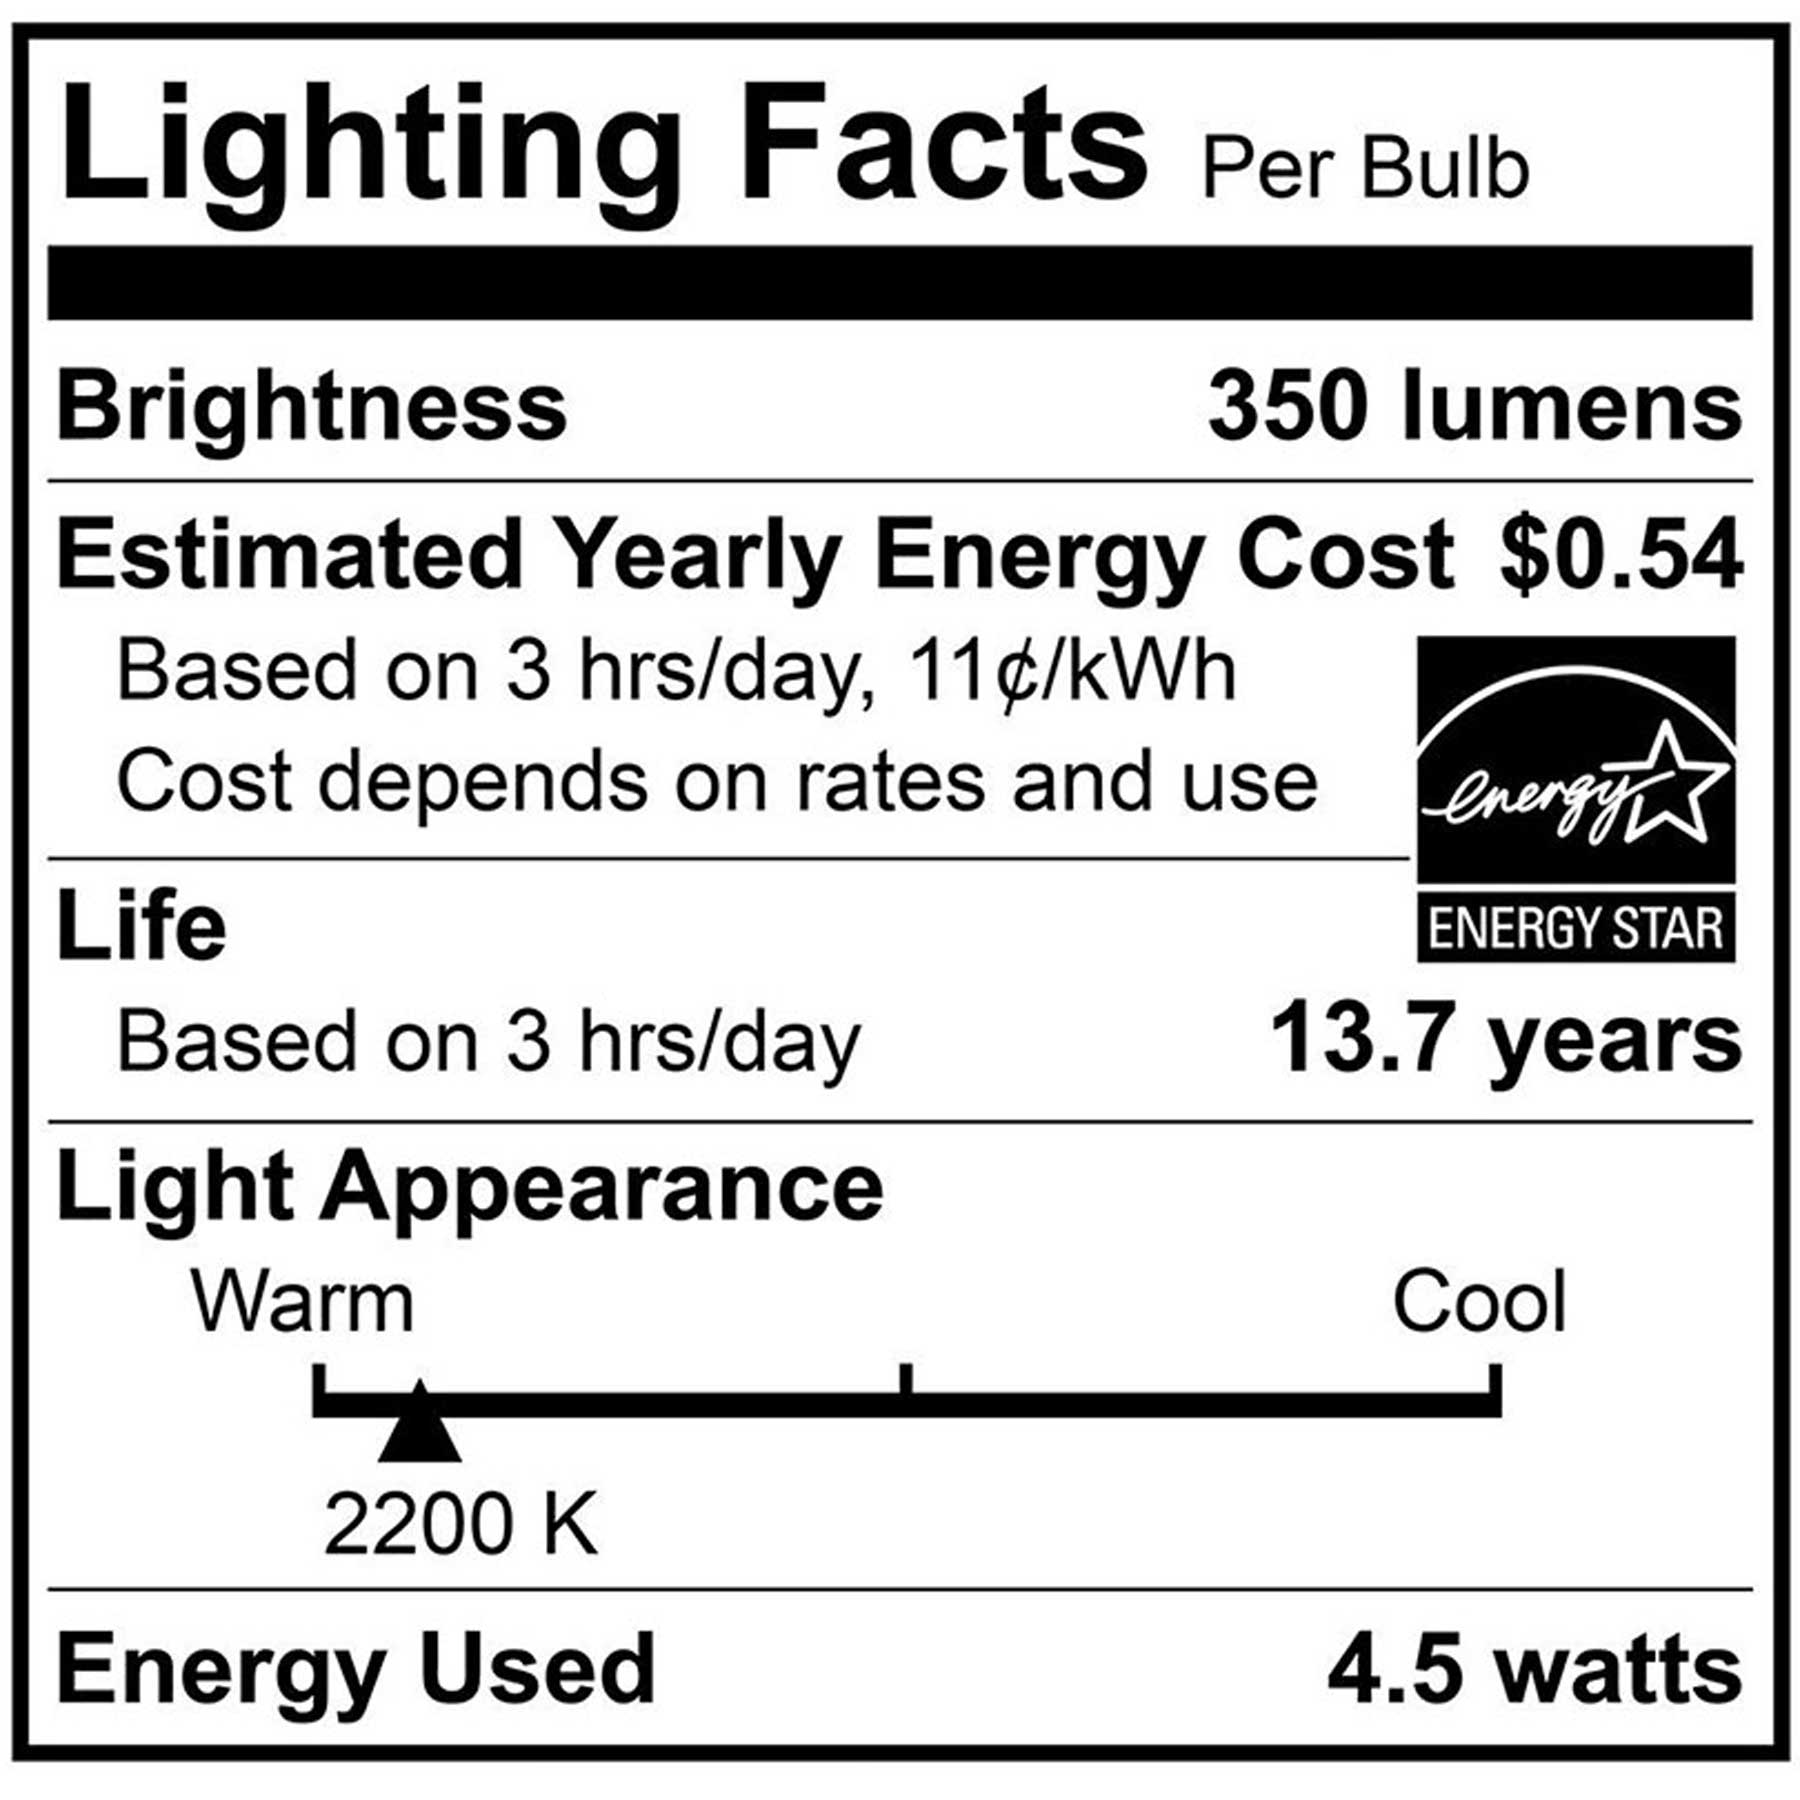 40-Watt Equivalent B10 E12 Bent Candle Flame LED Filament Light Bulb